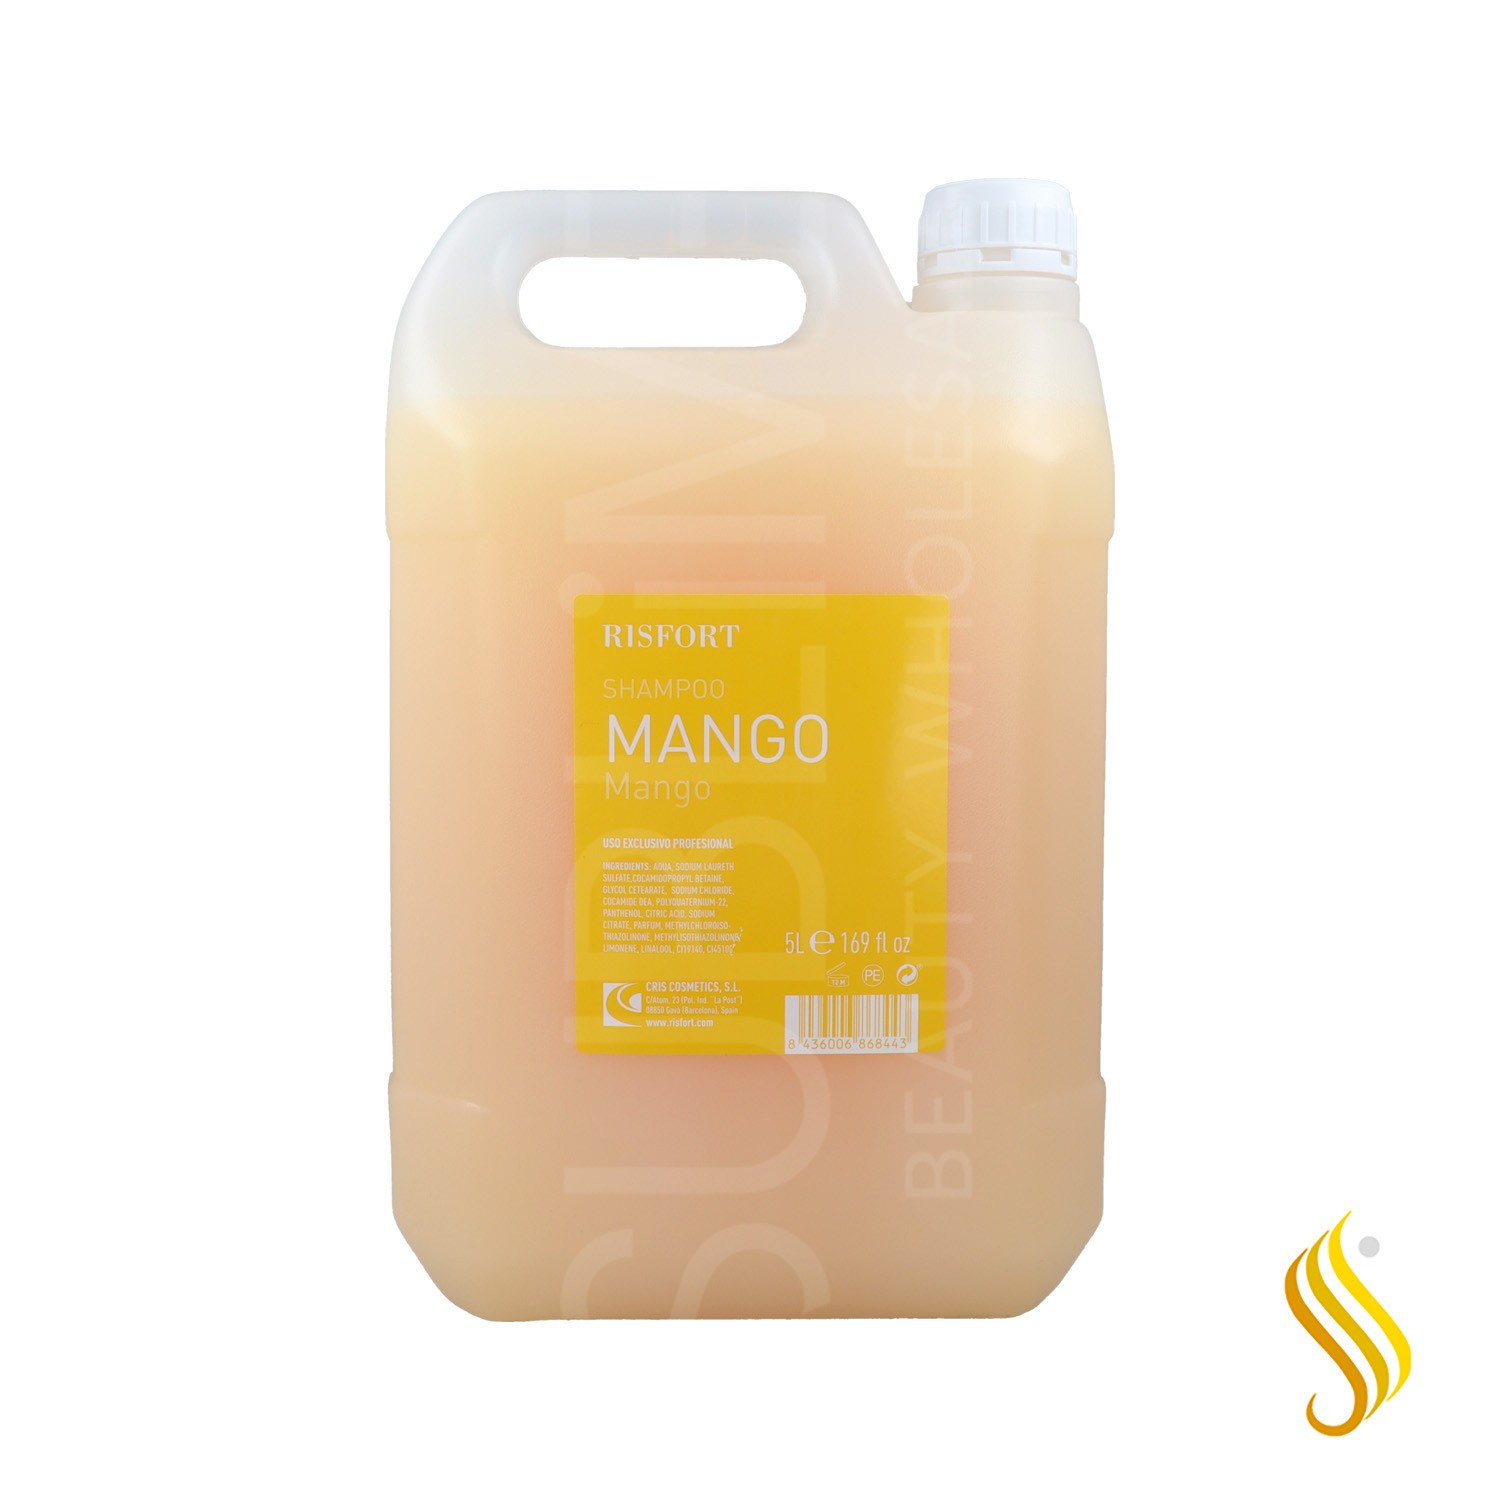 Risfort Mango Shampoo 5l